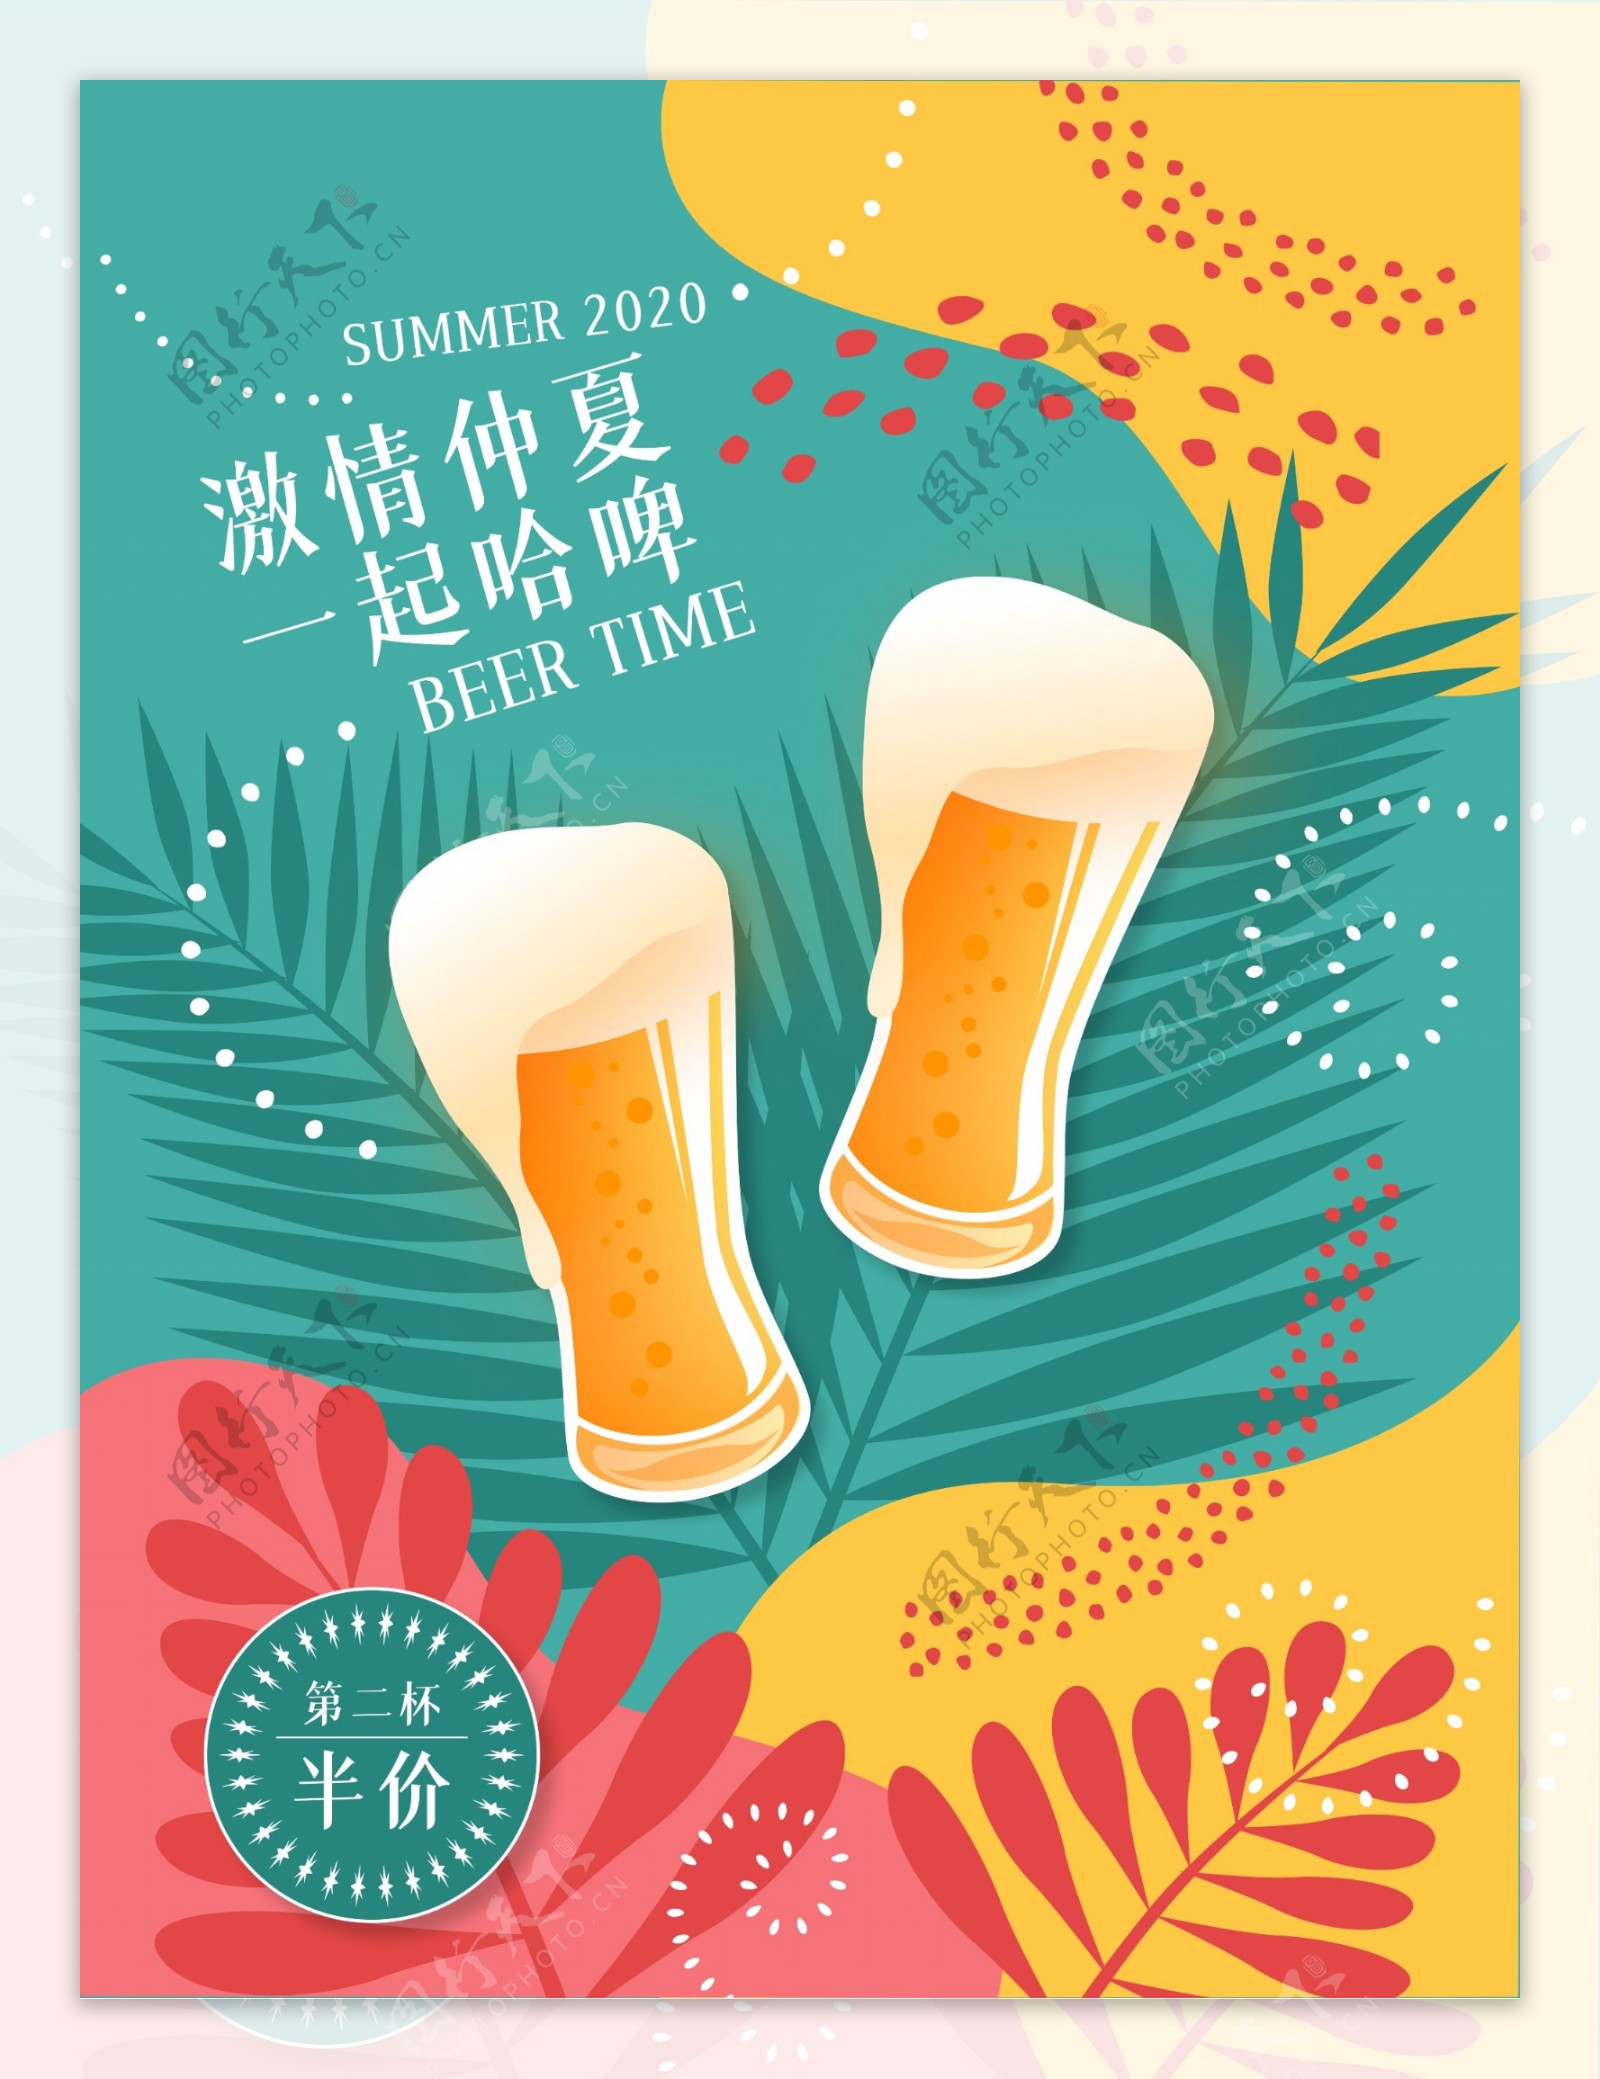 夏季啤酒促销海报